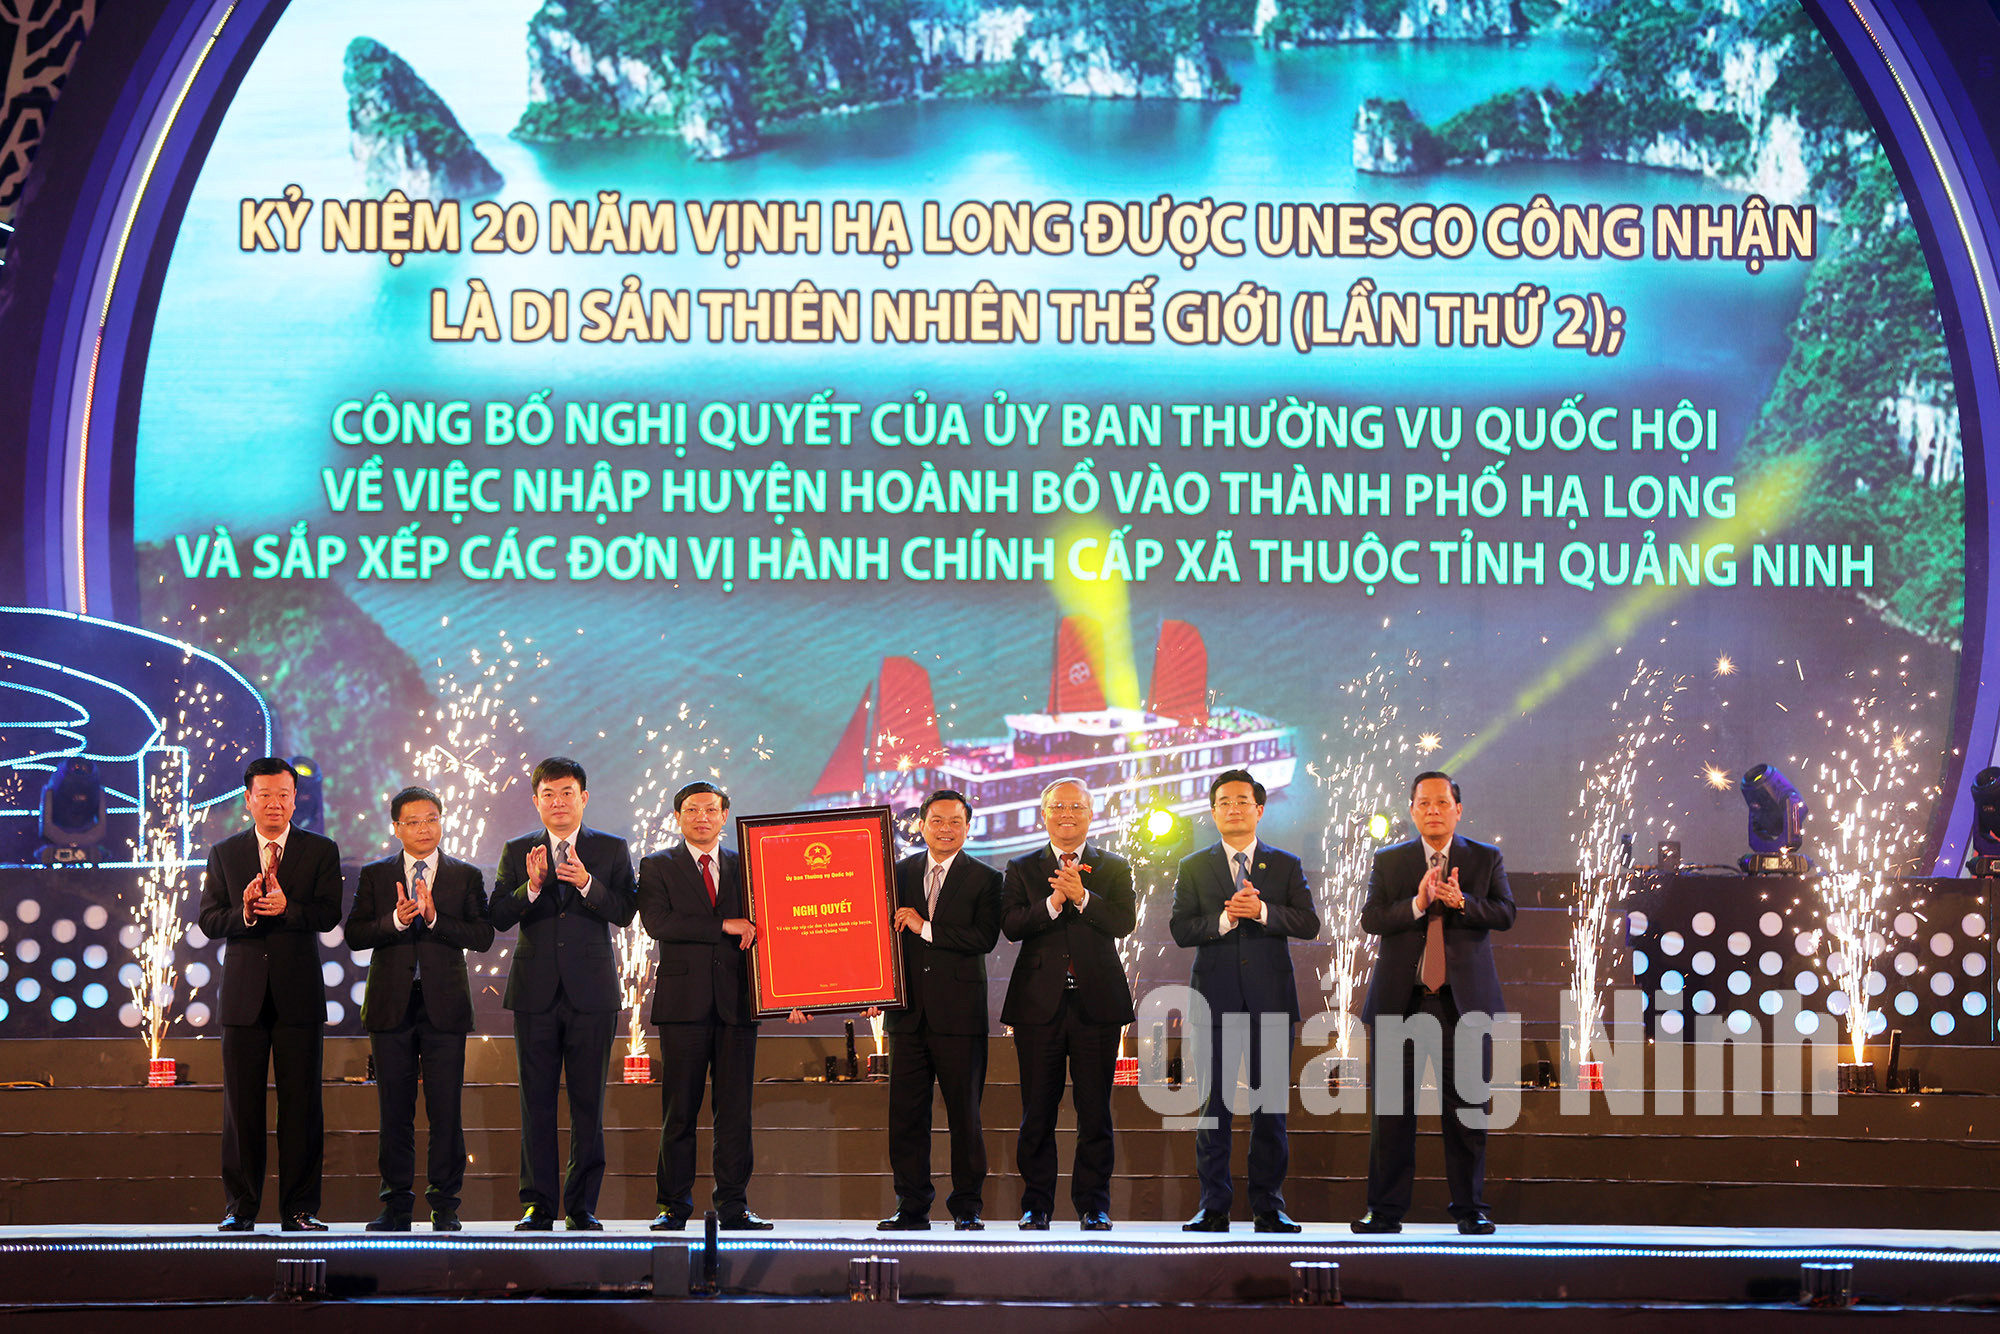 Đồng chí Uông Chu Lưu, Ủy viên Trung ương Đảng, Phó Chủ tịch Quốc hội, trao Nghị quyết 837 của Ủy ban Thường vụ Quốc hội cho tỉnh Quảng Ninh (1-2020). Ảnh: Đỗ Phương